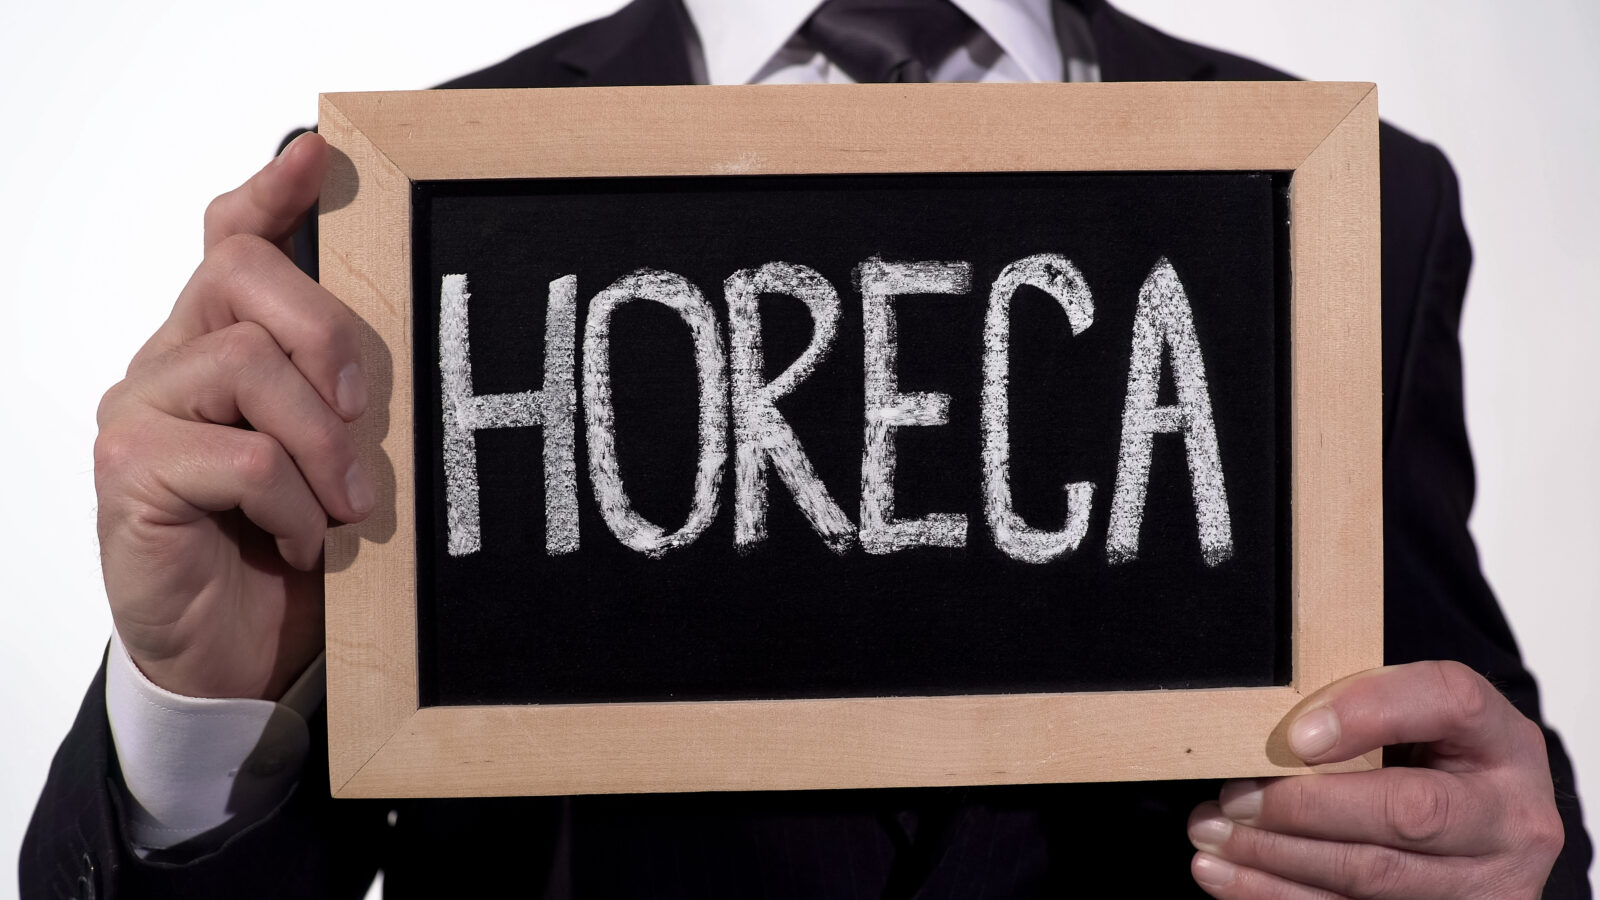 Horeca,Written,On,Blackboard,In,Businessman,Hands,,Catering,Service,Industry,